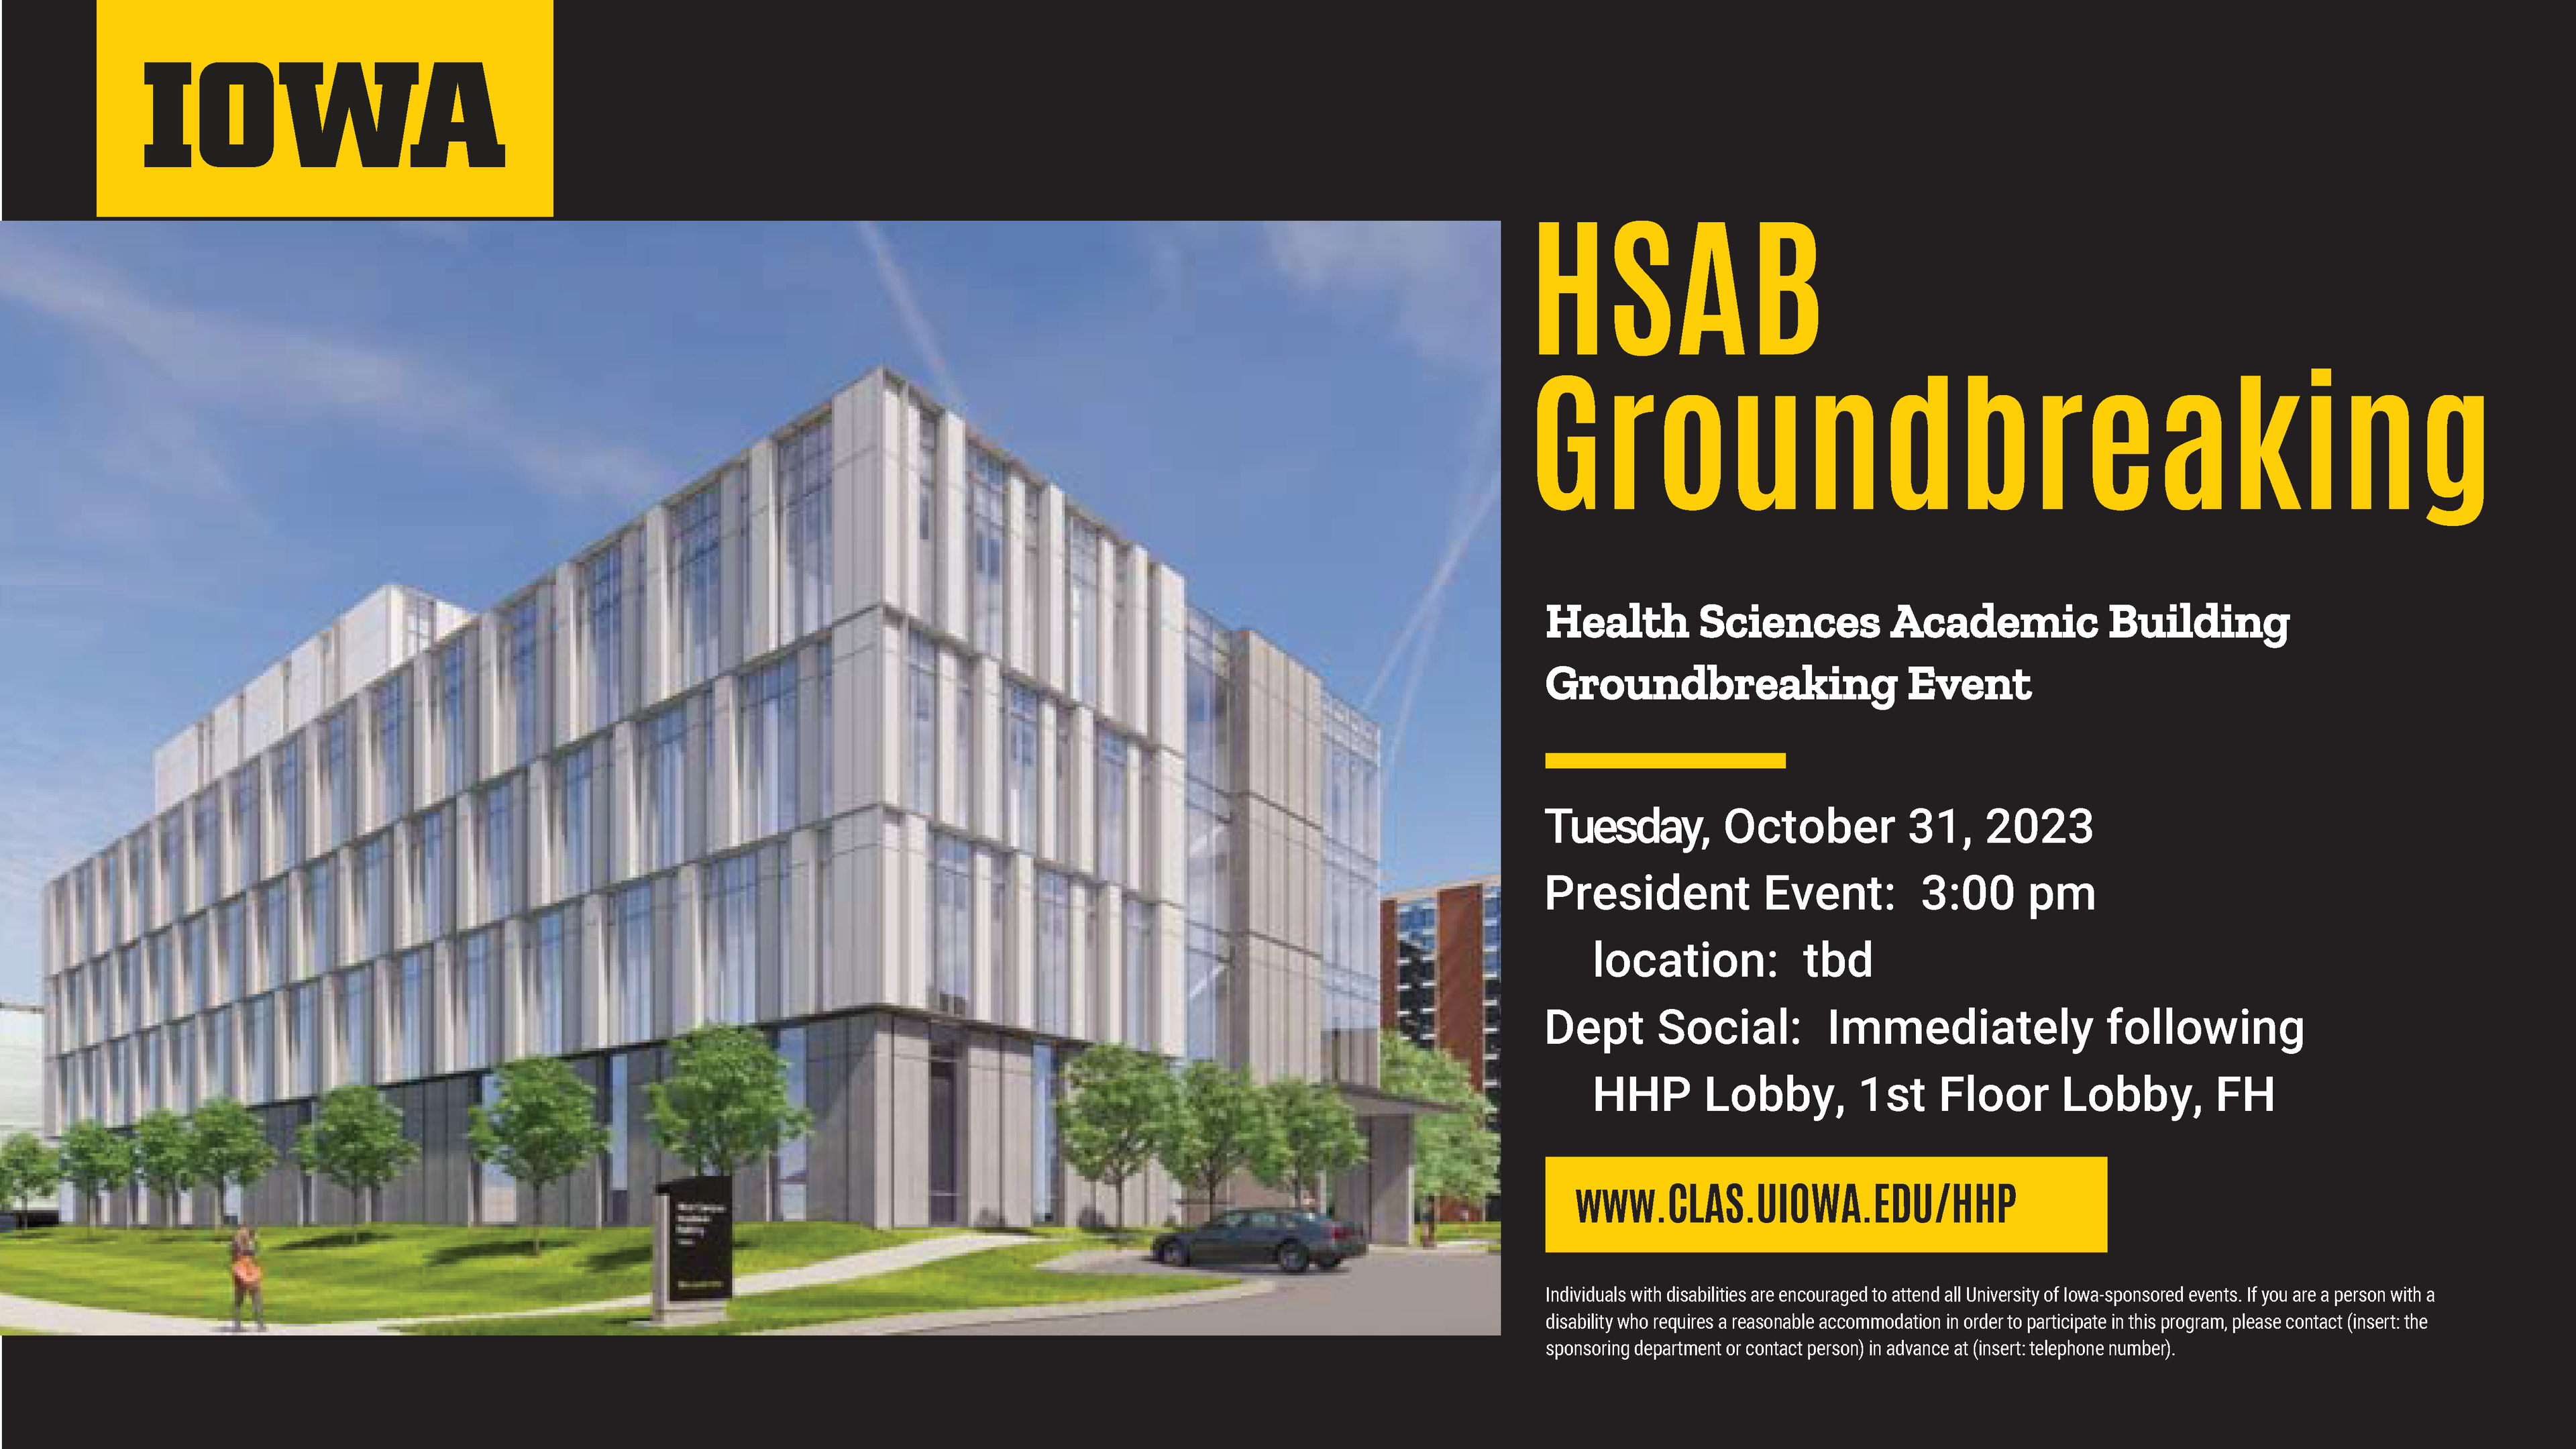 HSAB Groundbreaking